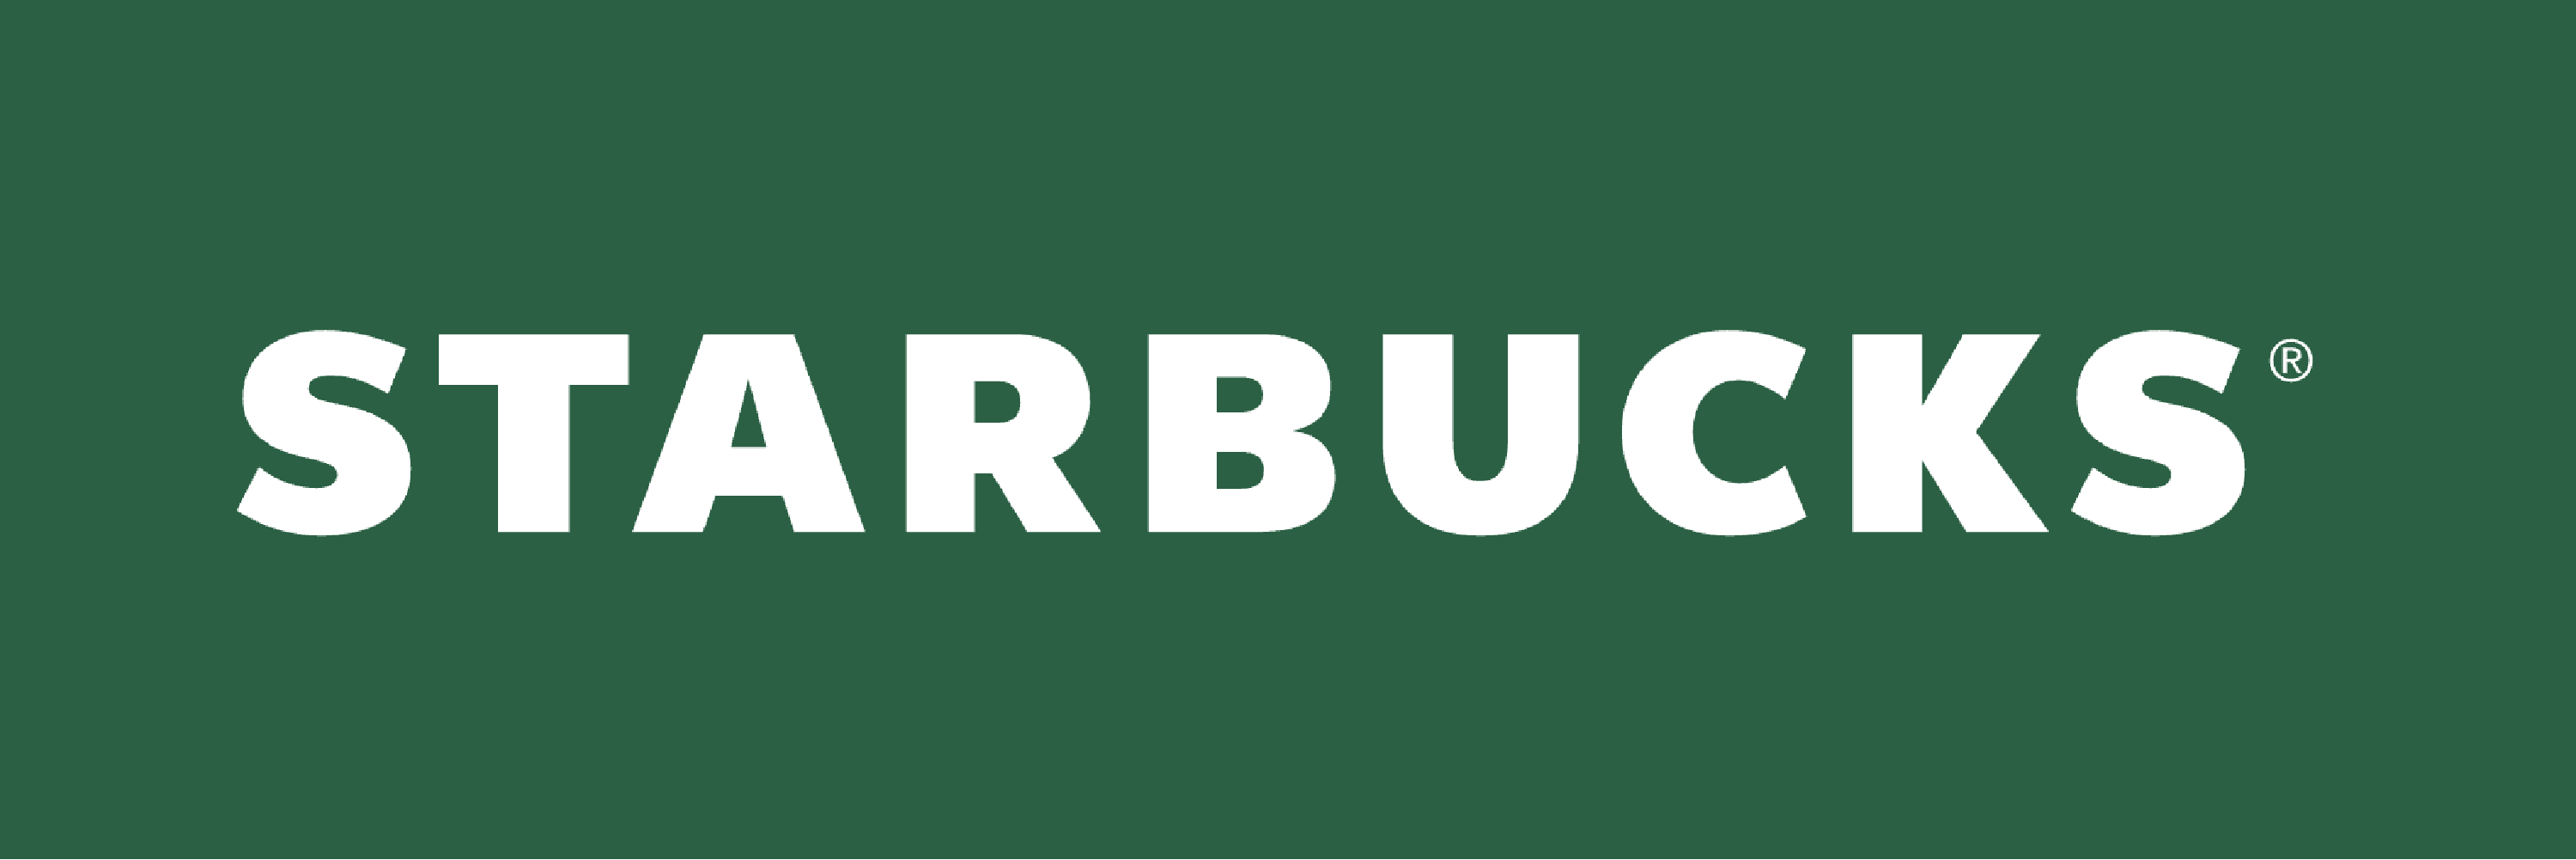 Starbucks logo for loyalty program